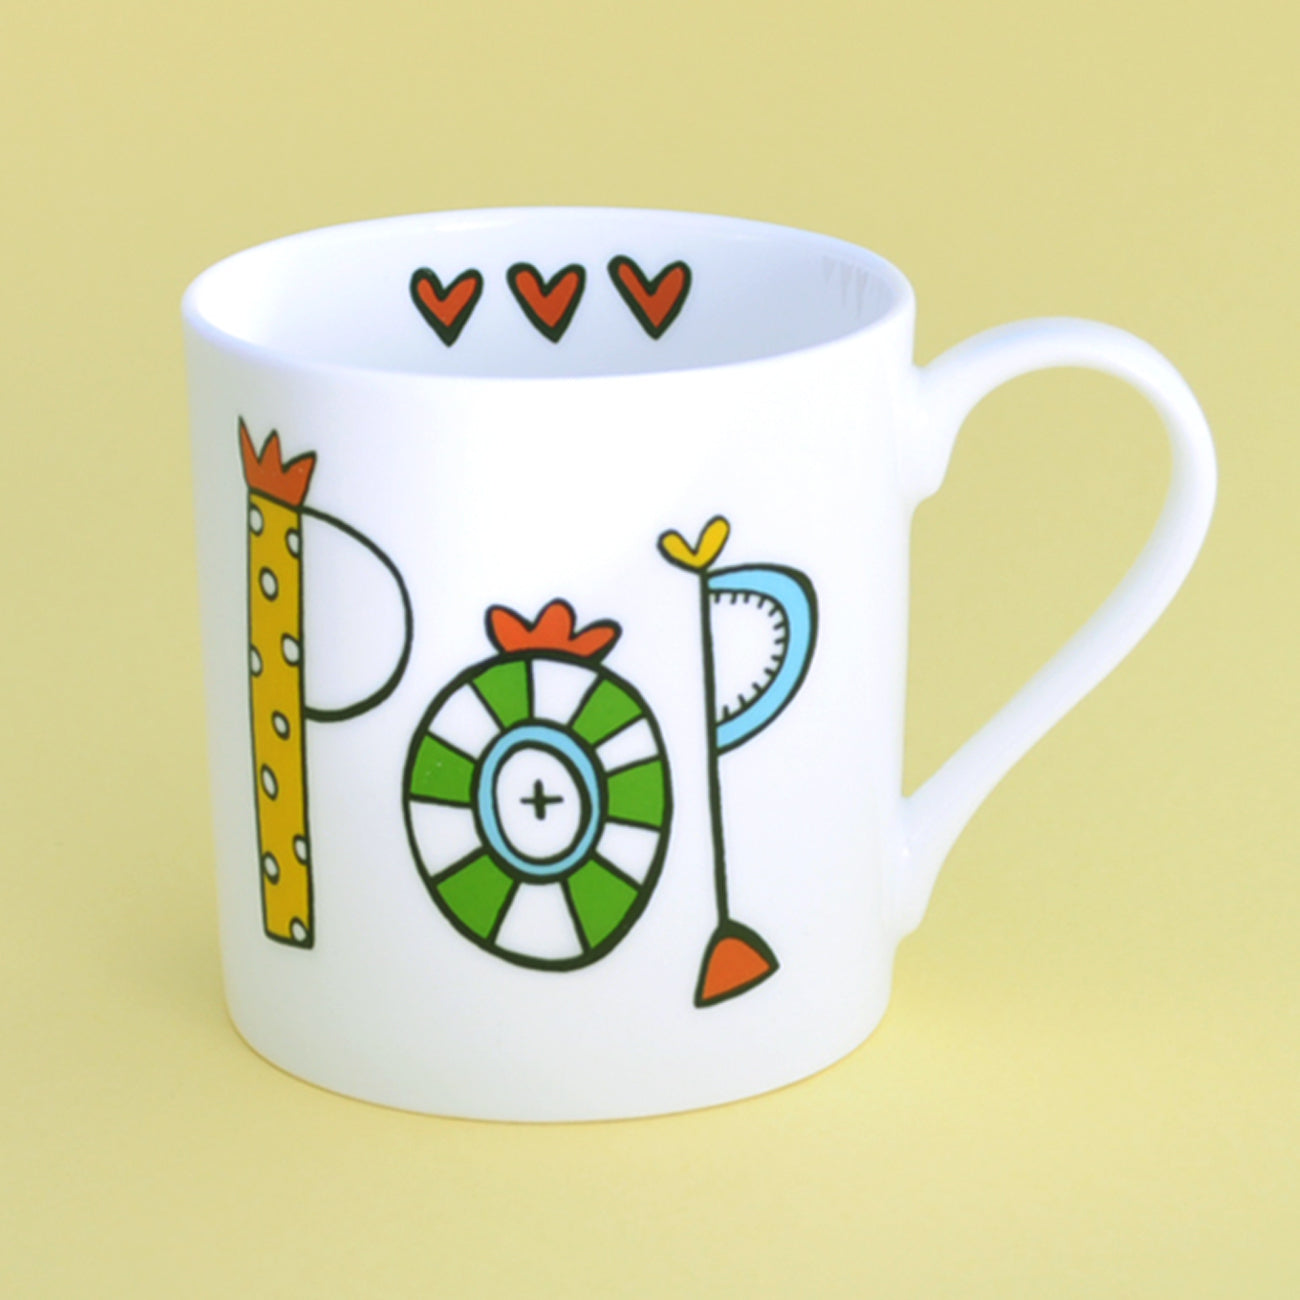 China Pop mug.